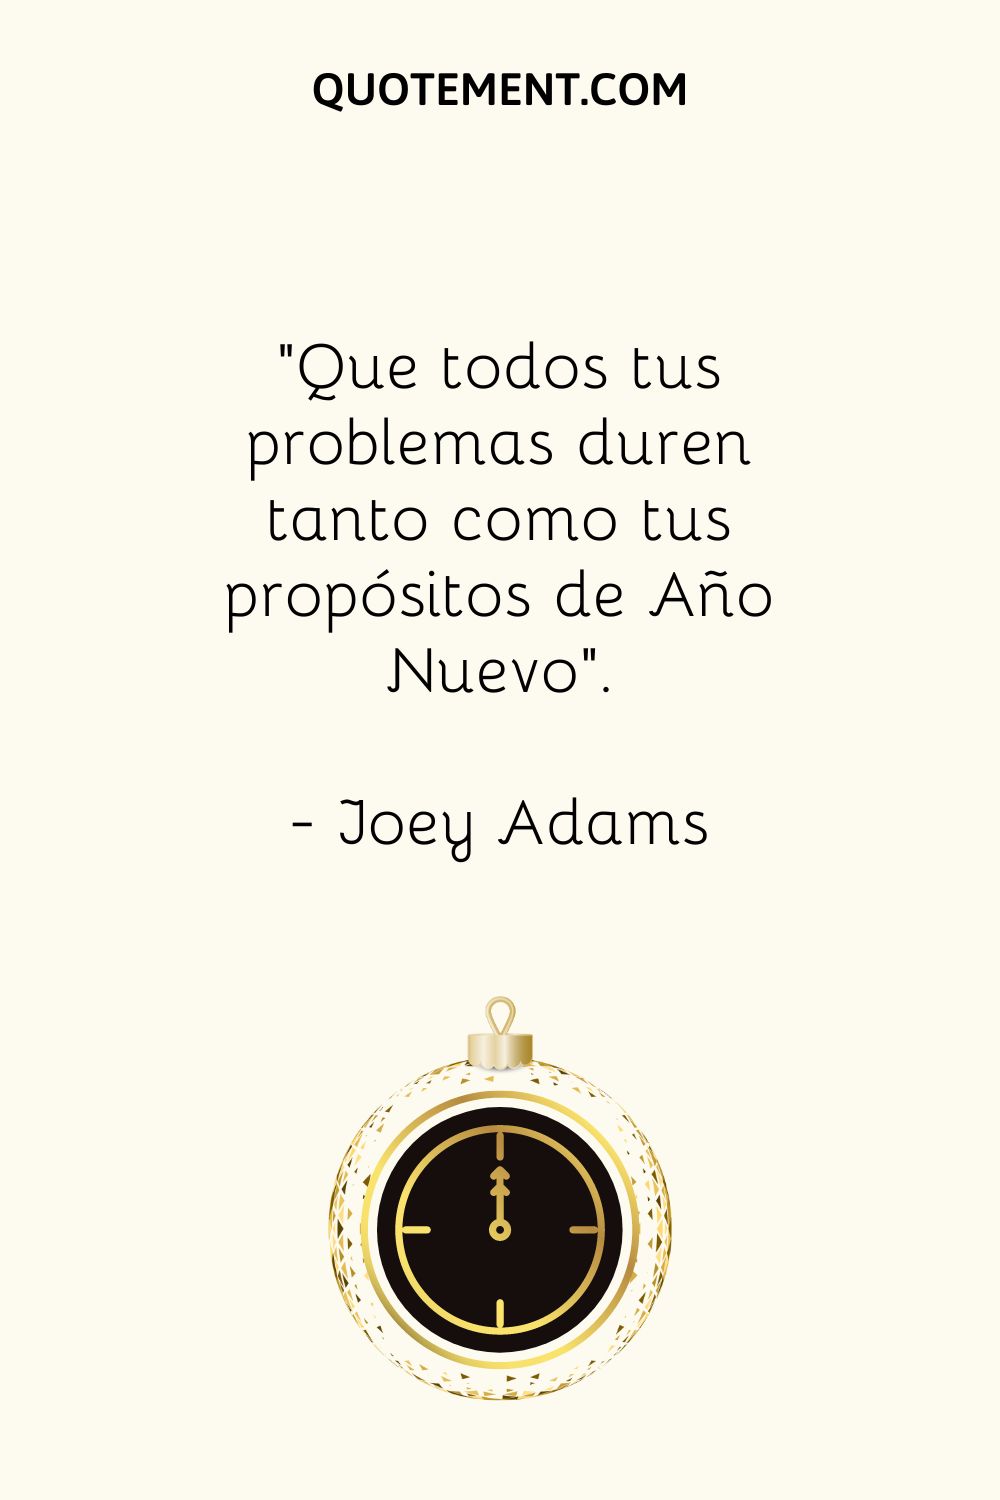 "Que todos tus problemas duren tanto como tus propósitos de Año Nuevo". - Joey Adams